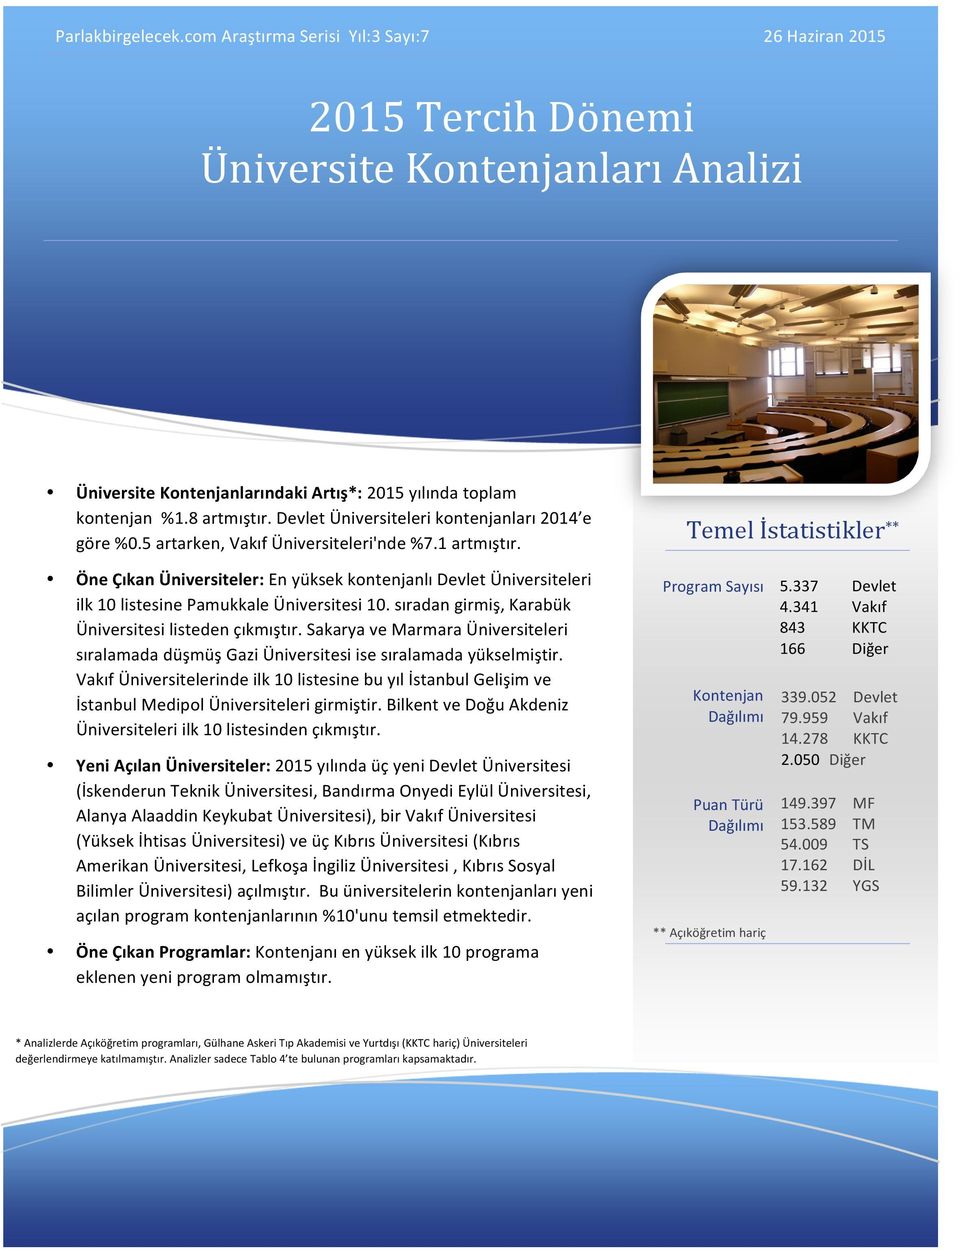 Öne Çıkan Üniversiteler: En yüksek kontenjanlı Devlet Üniversiteleri ilk 10 listesine Pamukkale Üniversitesi 10. sıradan girmiş, Karabük Üniversitesi listeden çıkmıştır.